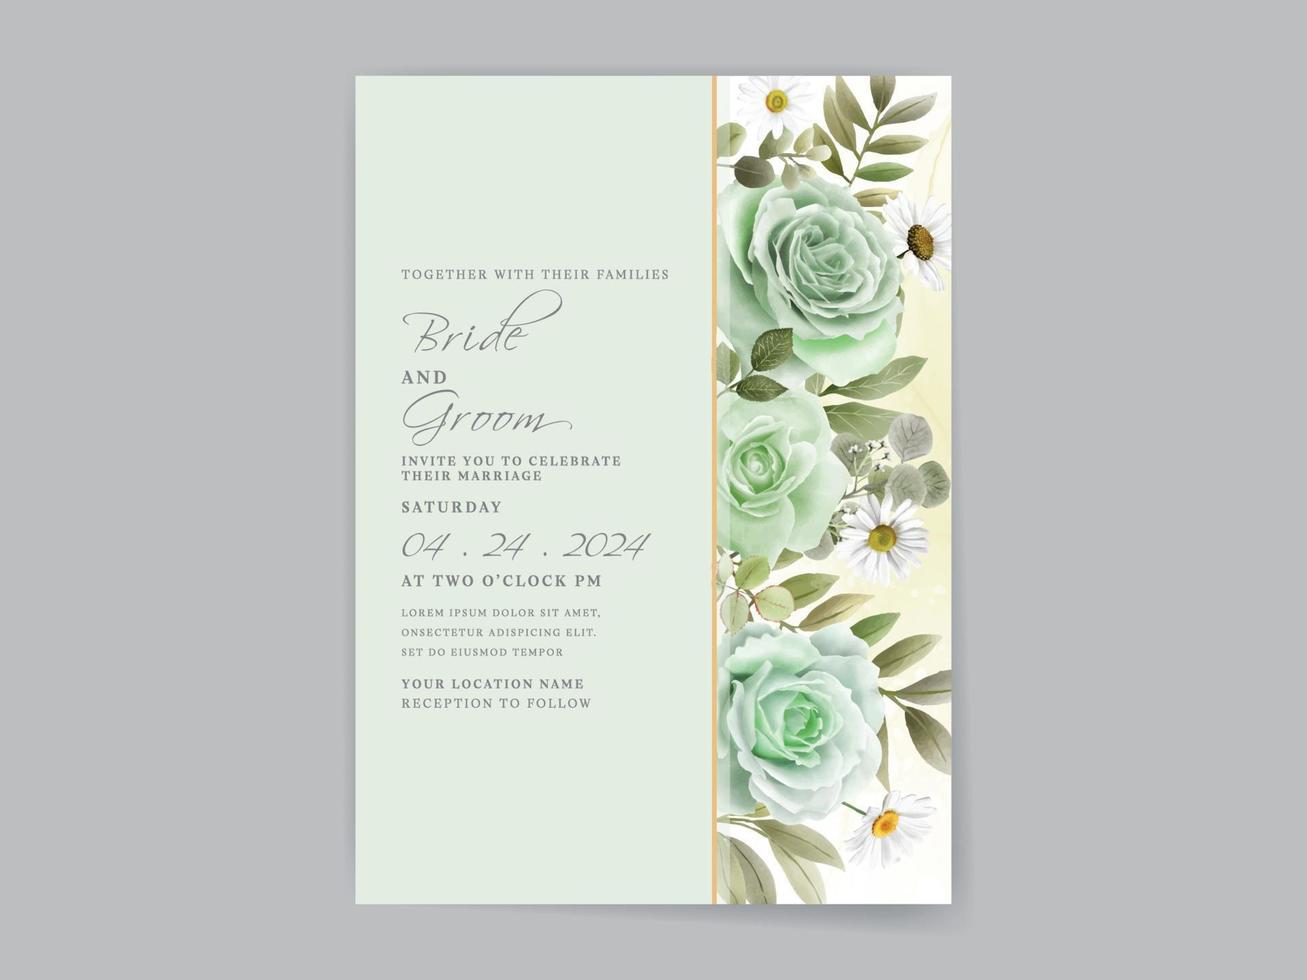 tarjeta de invitación de boda de rosas verdes dibujadas a mano vector